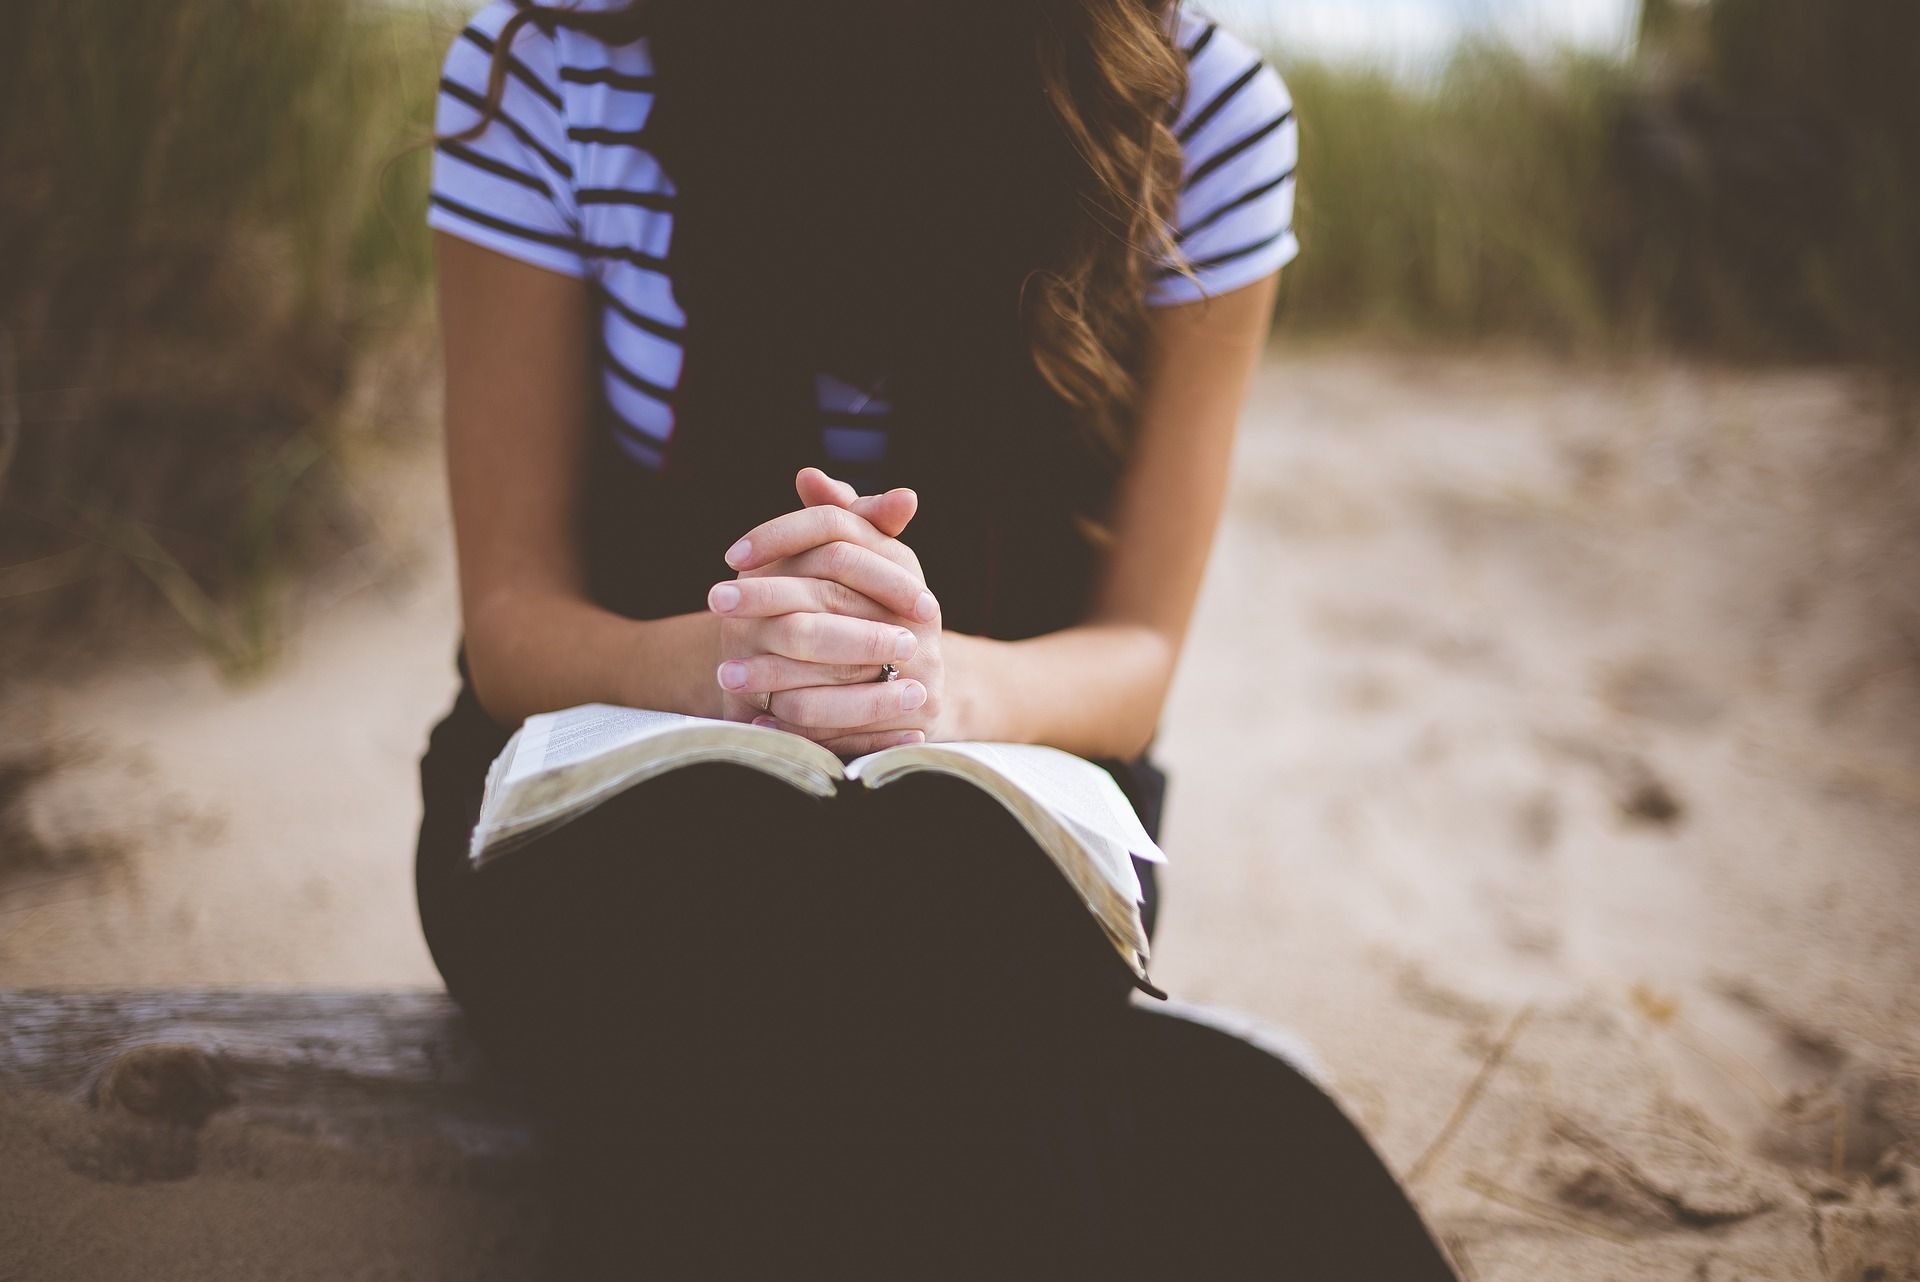 jeune fille priant sur sa Bible. Image par StockSnap de https://pixabay.com/fr/photos/plage-fille-loisirs-en-plein-air-1868772/